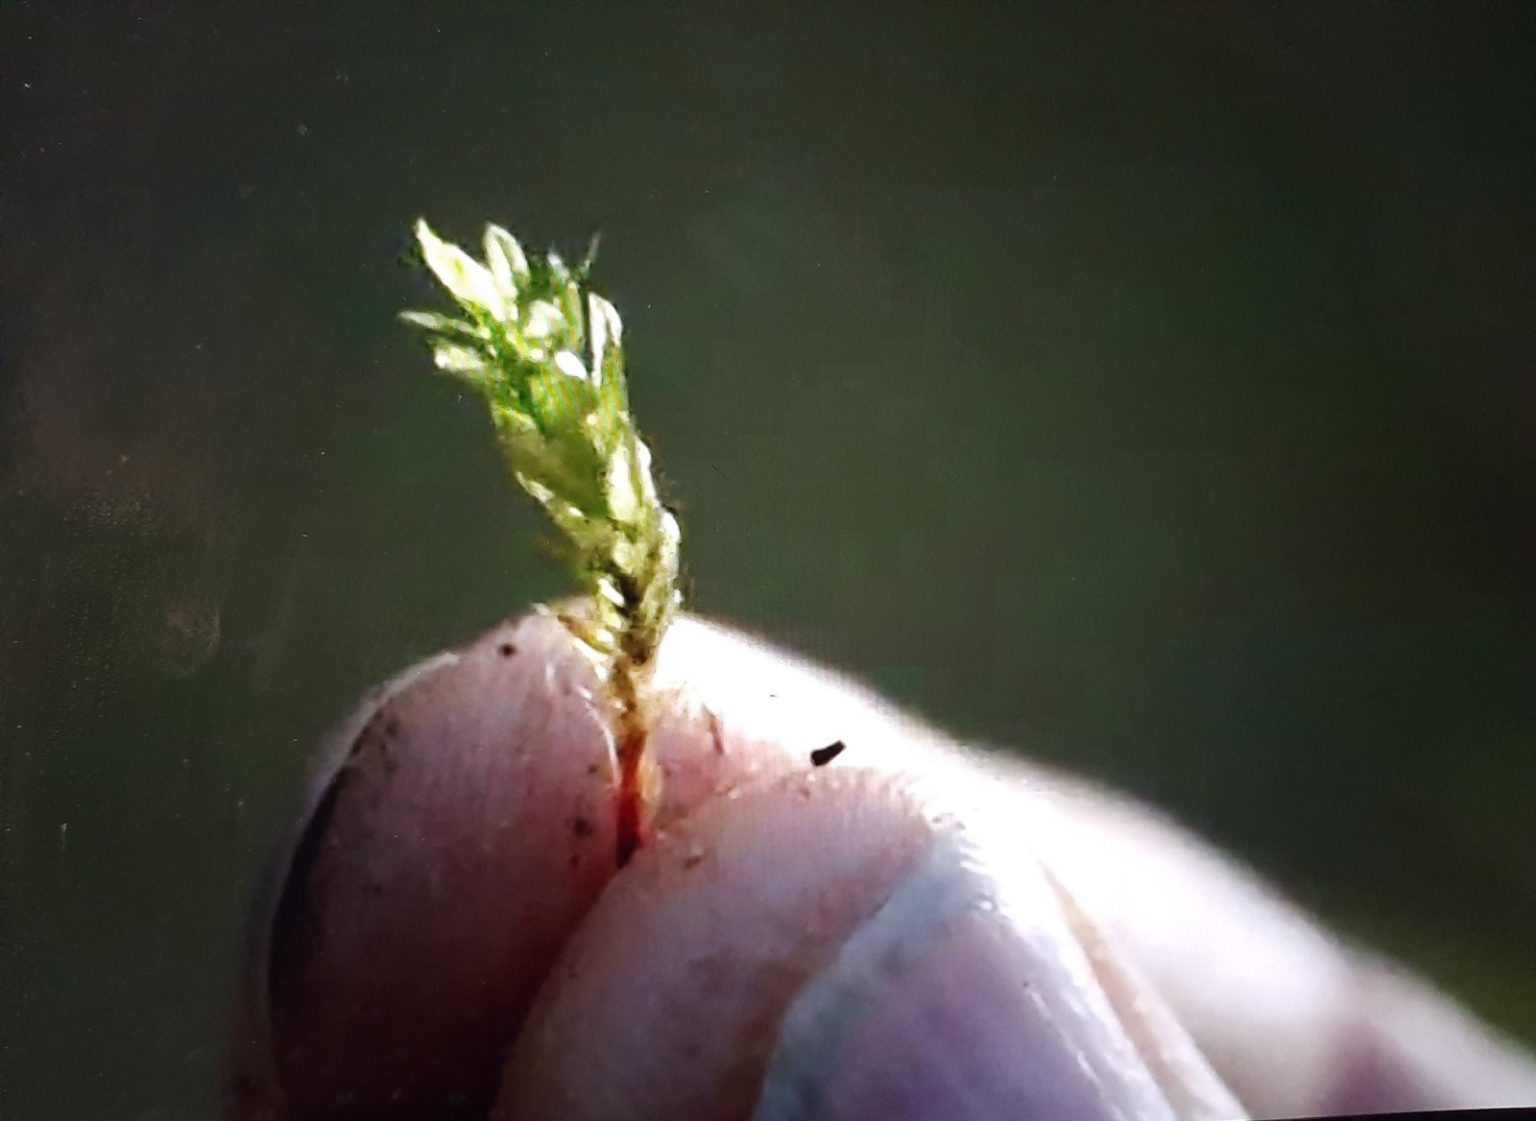 Cena do filme Here. Na imagem, vemos um zoom ou close-up de dois dedos de uma pessoa branca segurando um pequeno pedaço de planta verde.